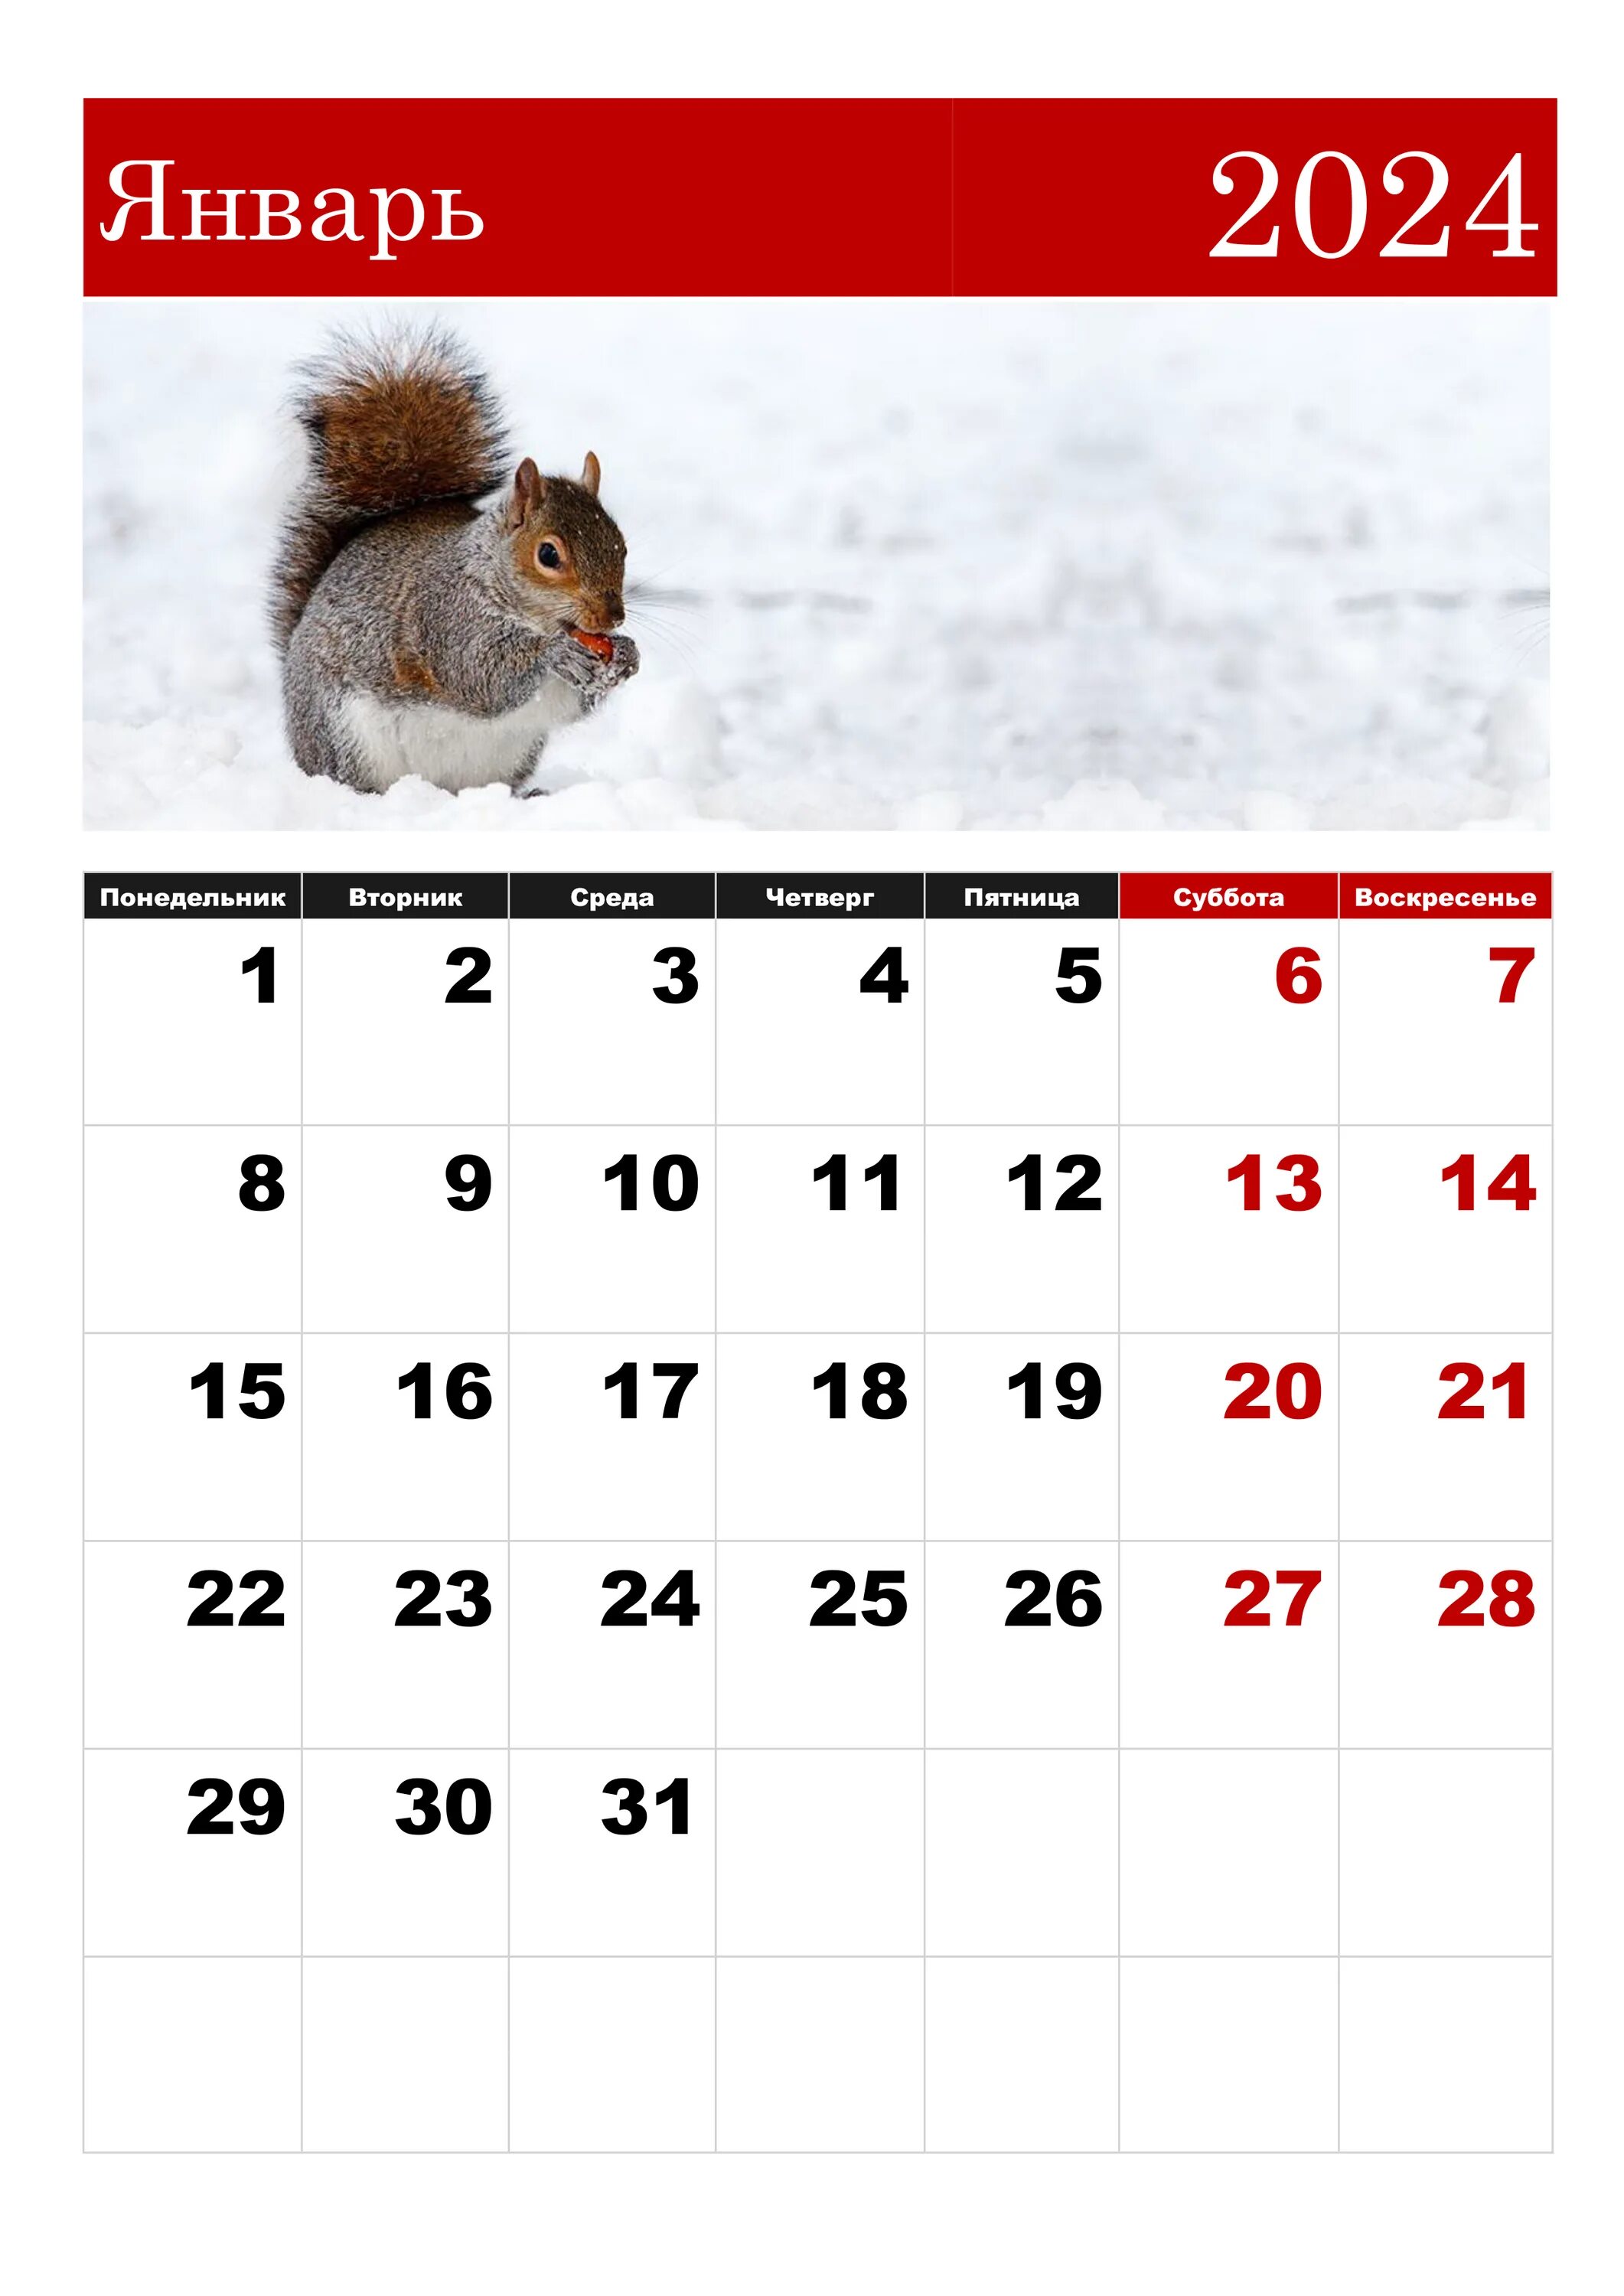 Календарная январь 2024. ЯНВАРЬРЬ 2024. Календарь январь. Календарь на январь 2024 года. 5 неделя февраля 2024